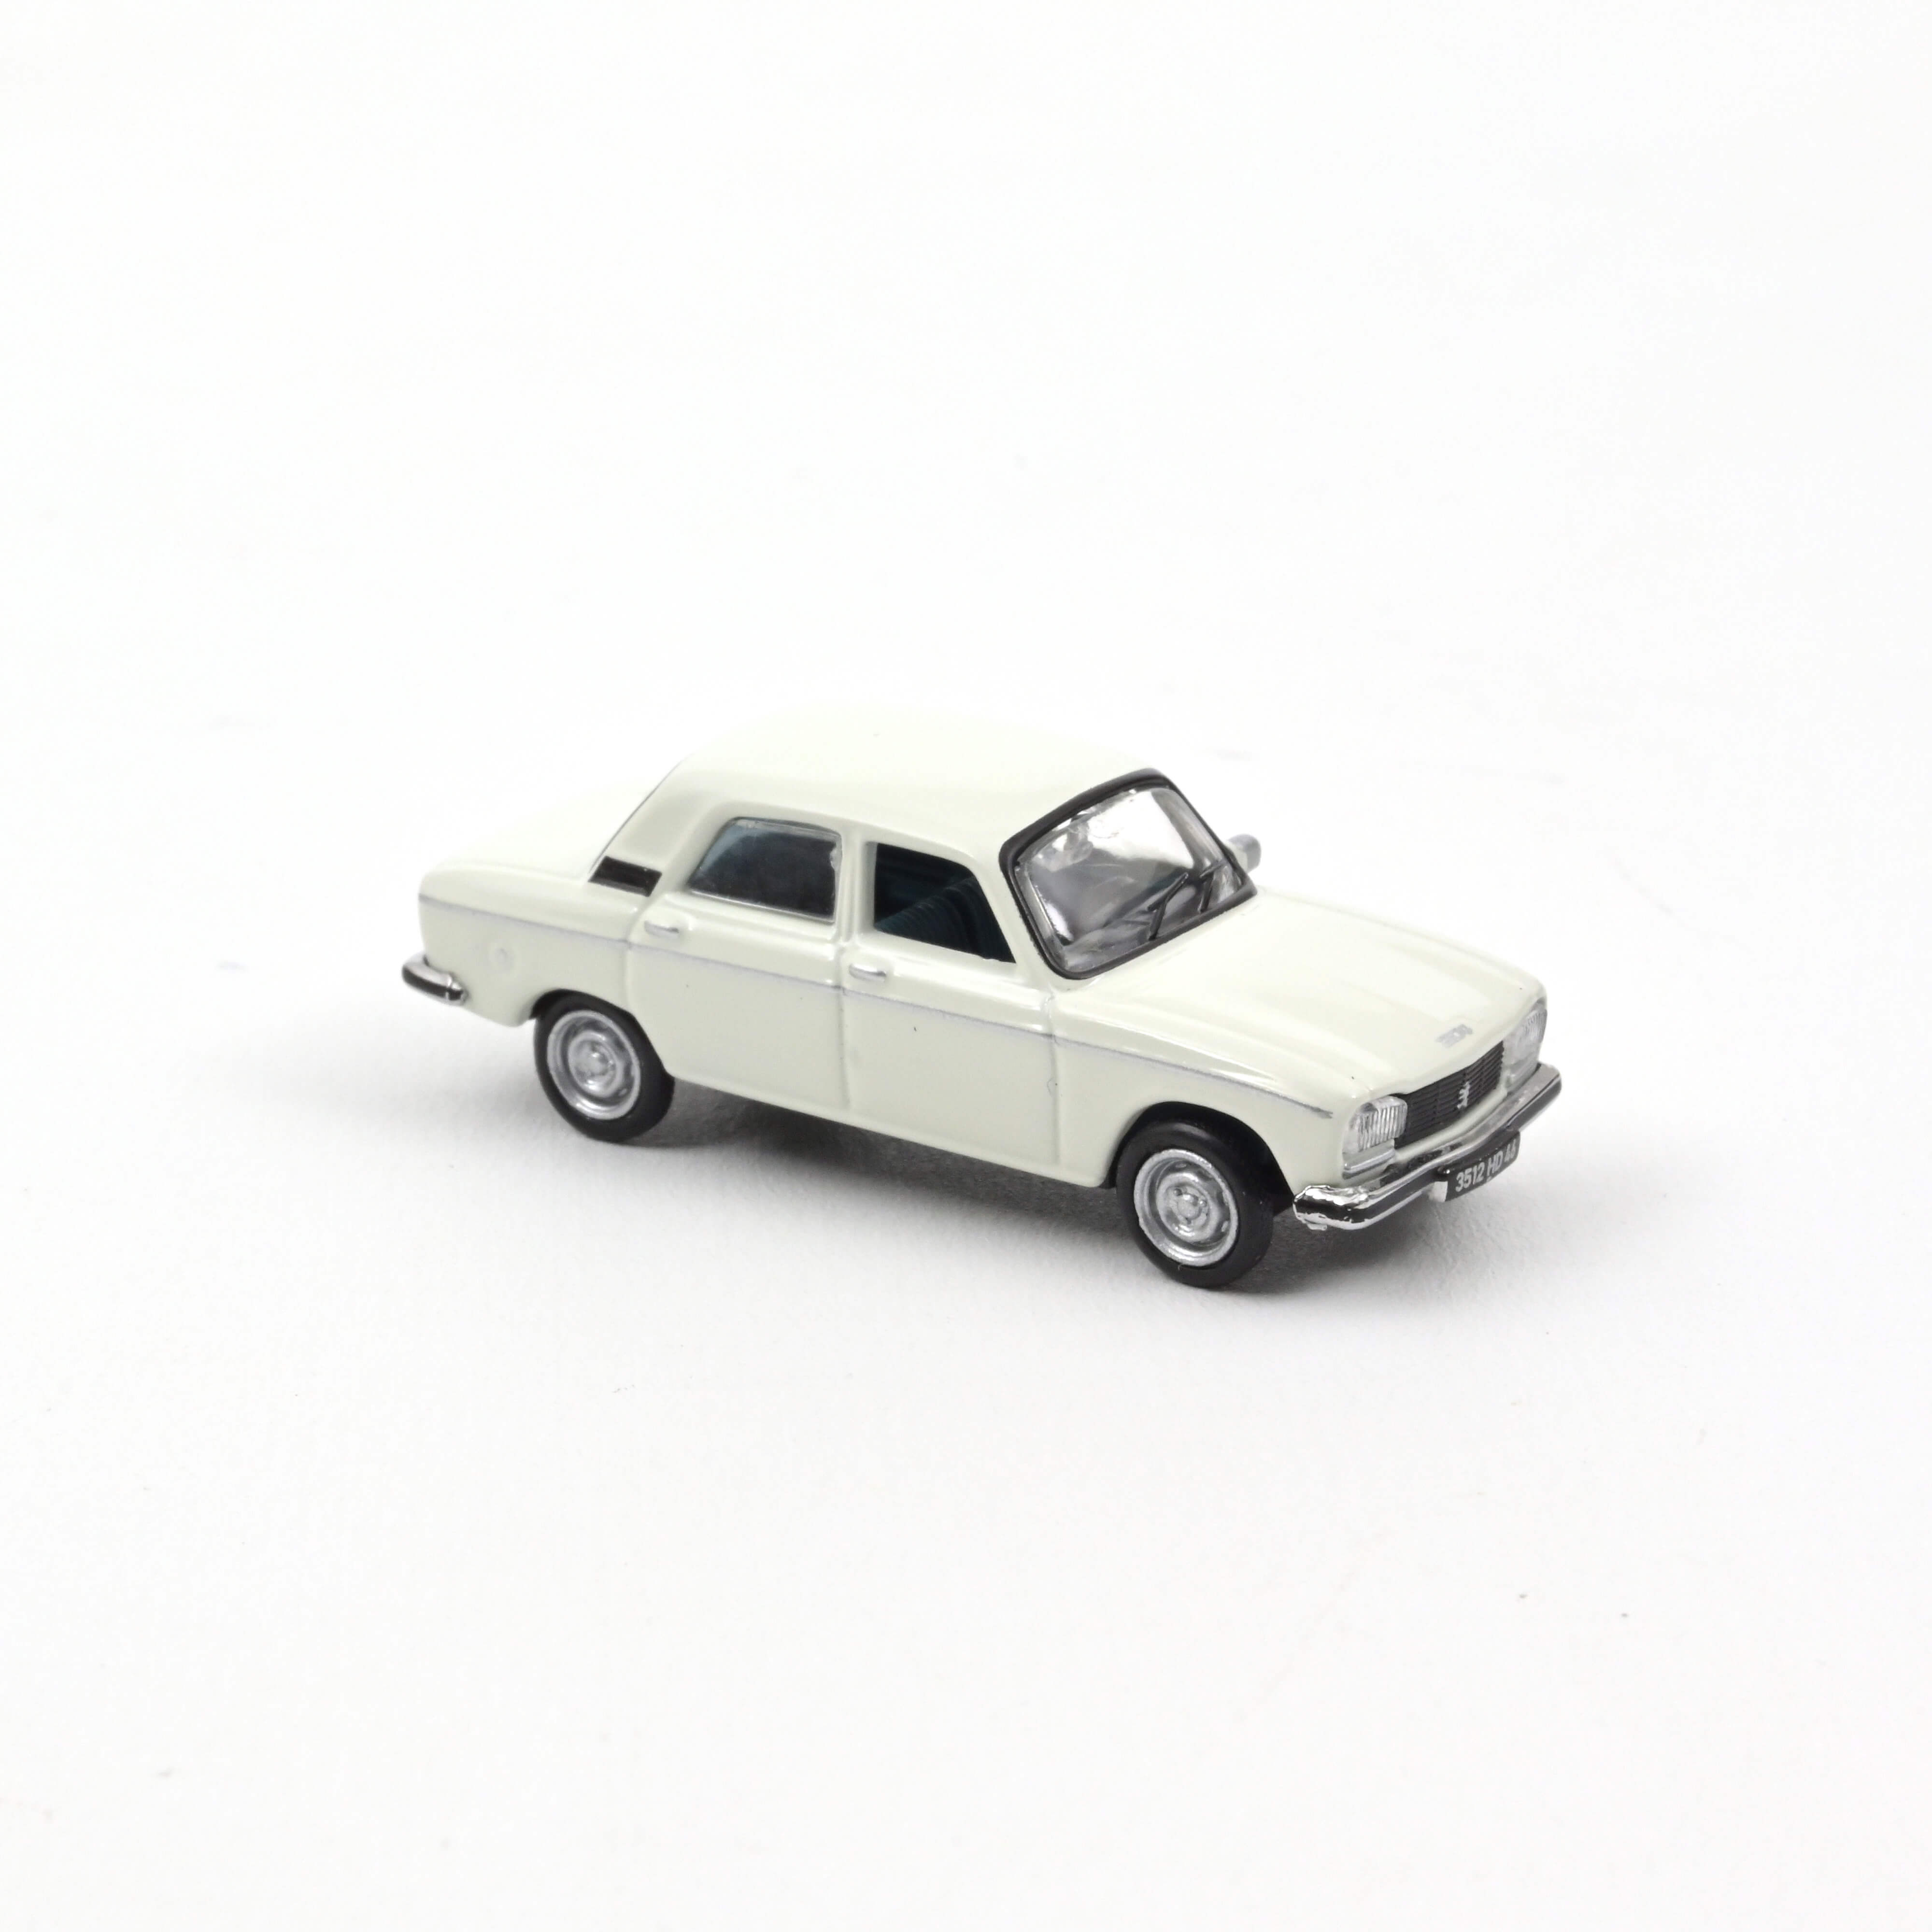 Peugeot 304 GL´77 weiß 1:87 